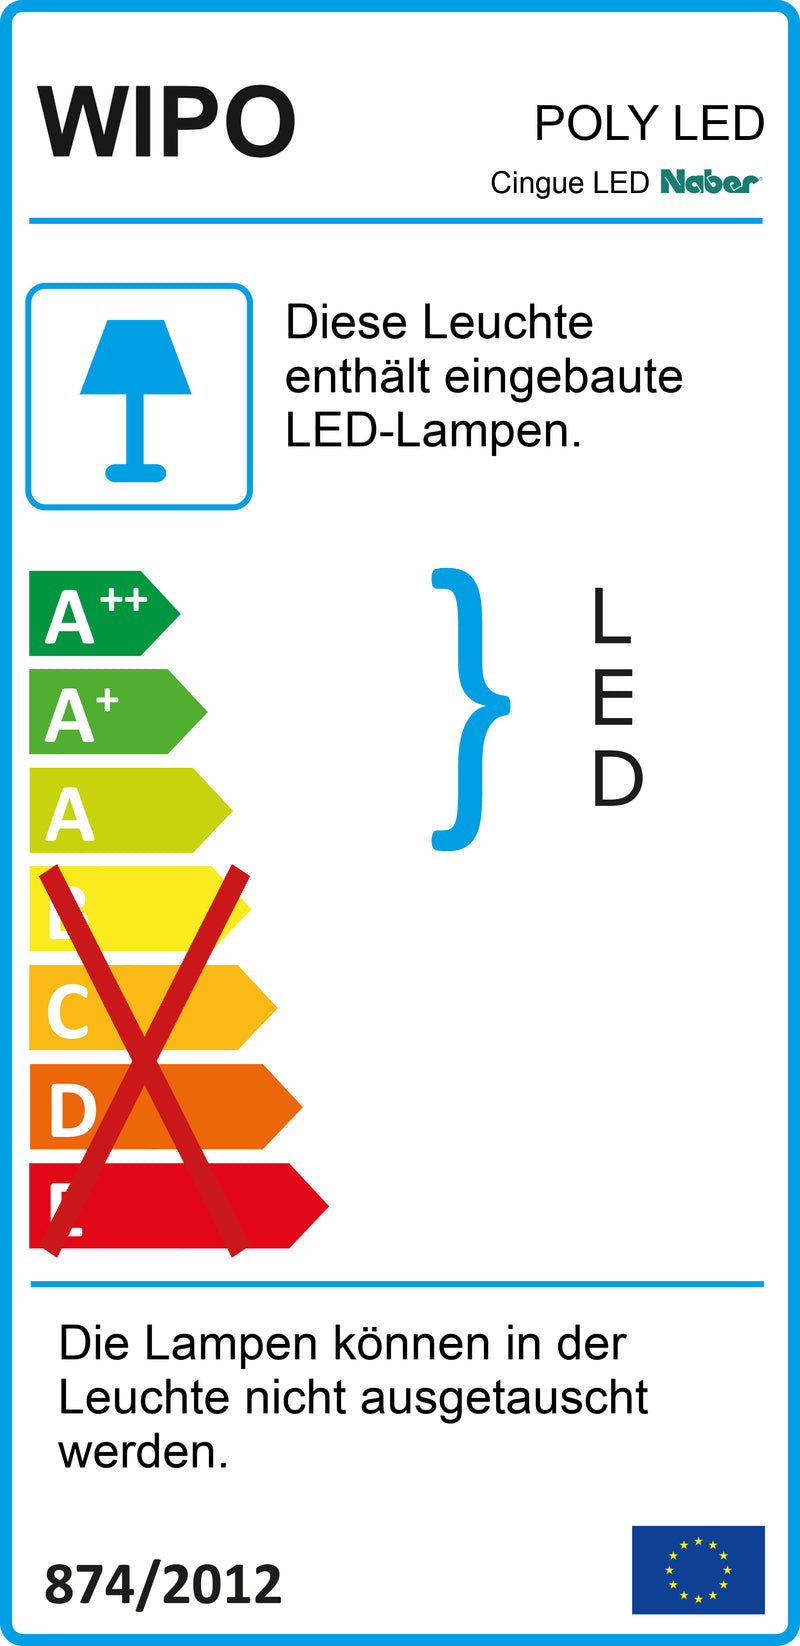 E-Label zu Zeichnung zu Cingue LED als Variante L 1362 mm, 60 W, edelstahlfarbig von Naber GmbH in der Kategorie Lichttechnik in Österreich auf conceptshop.at